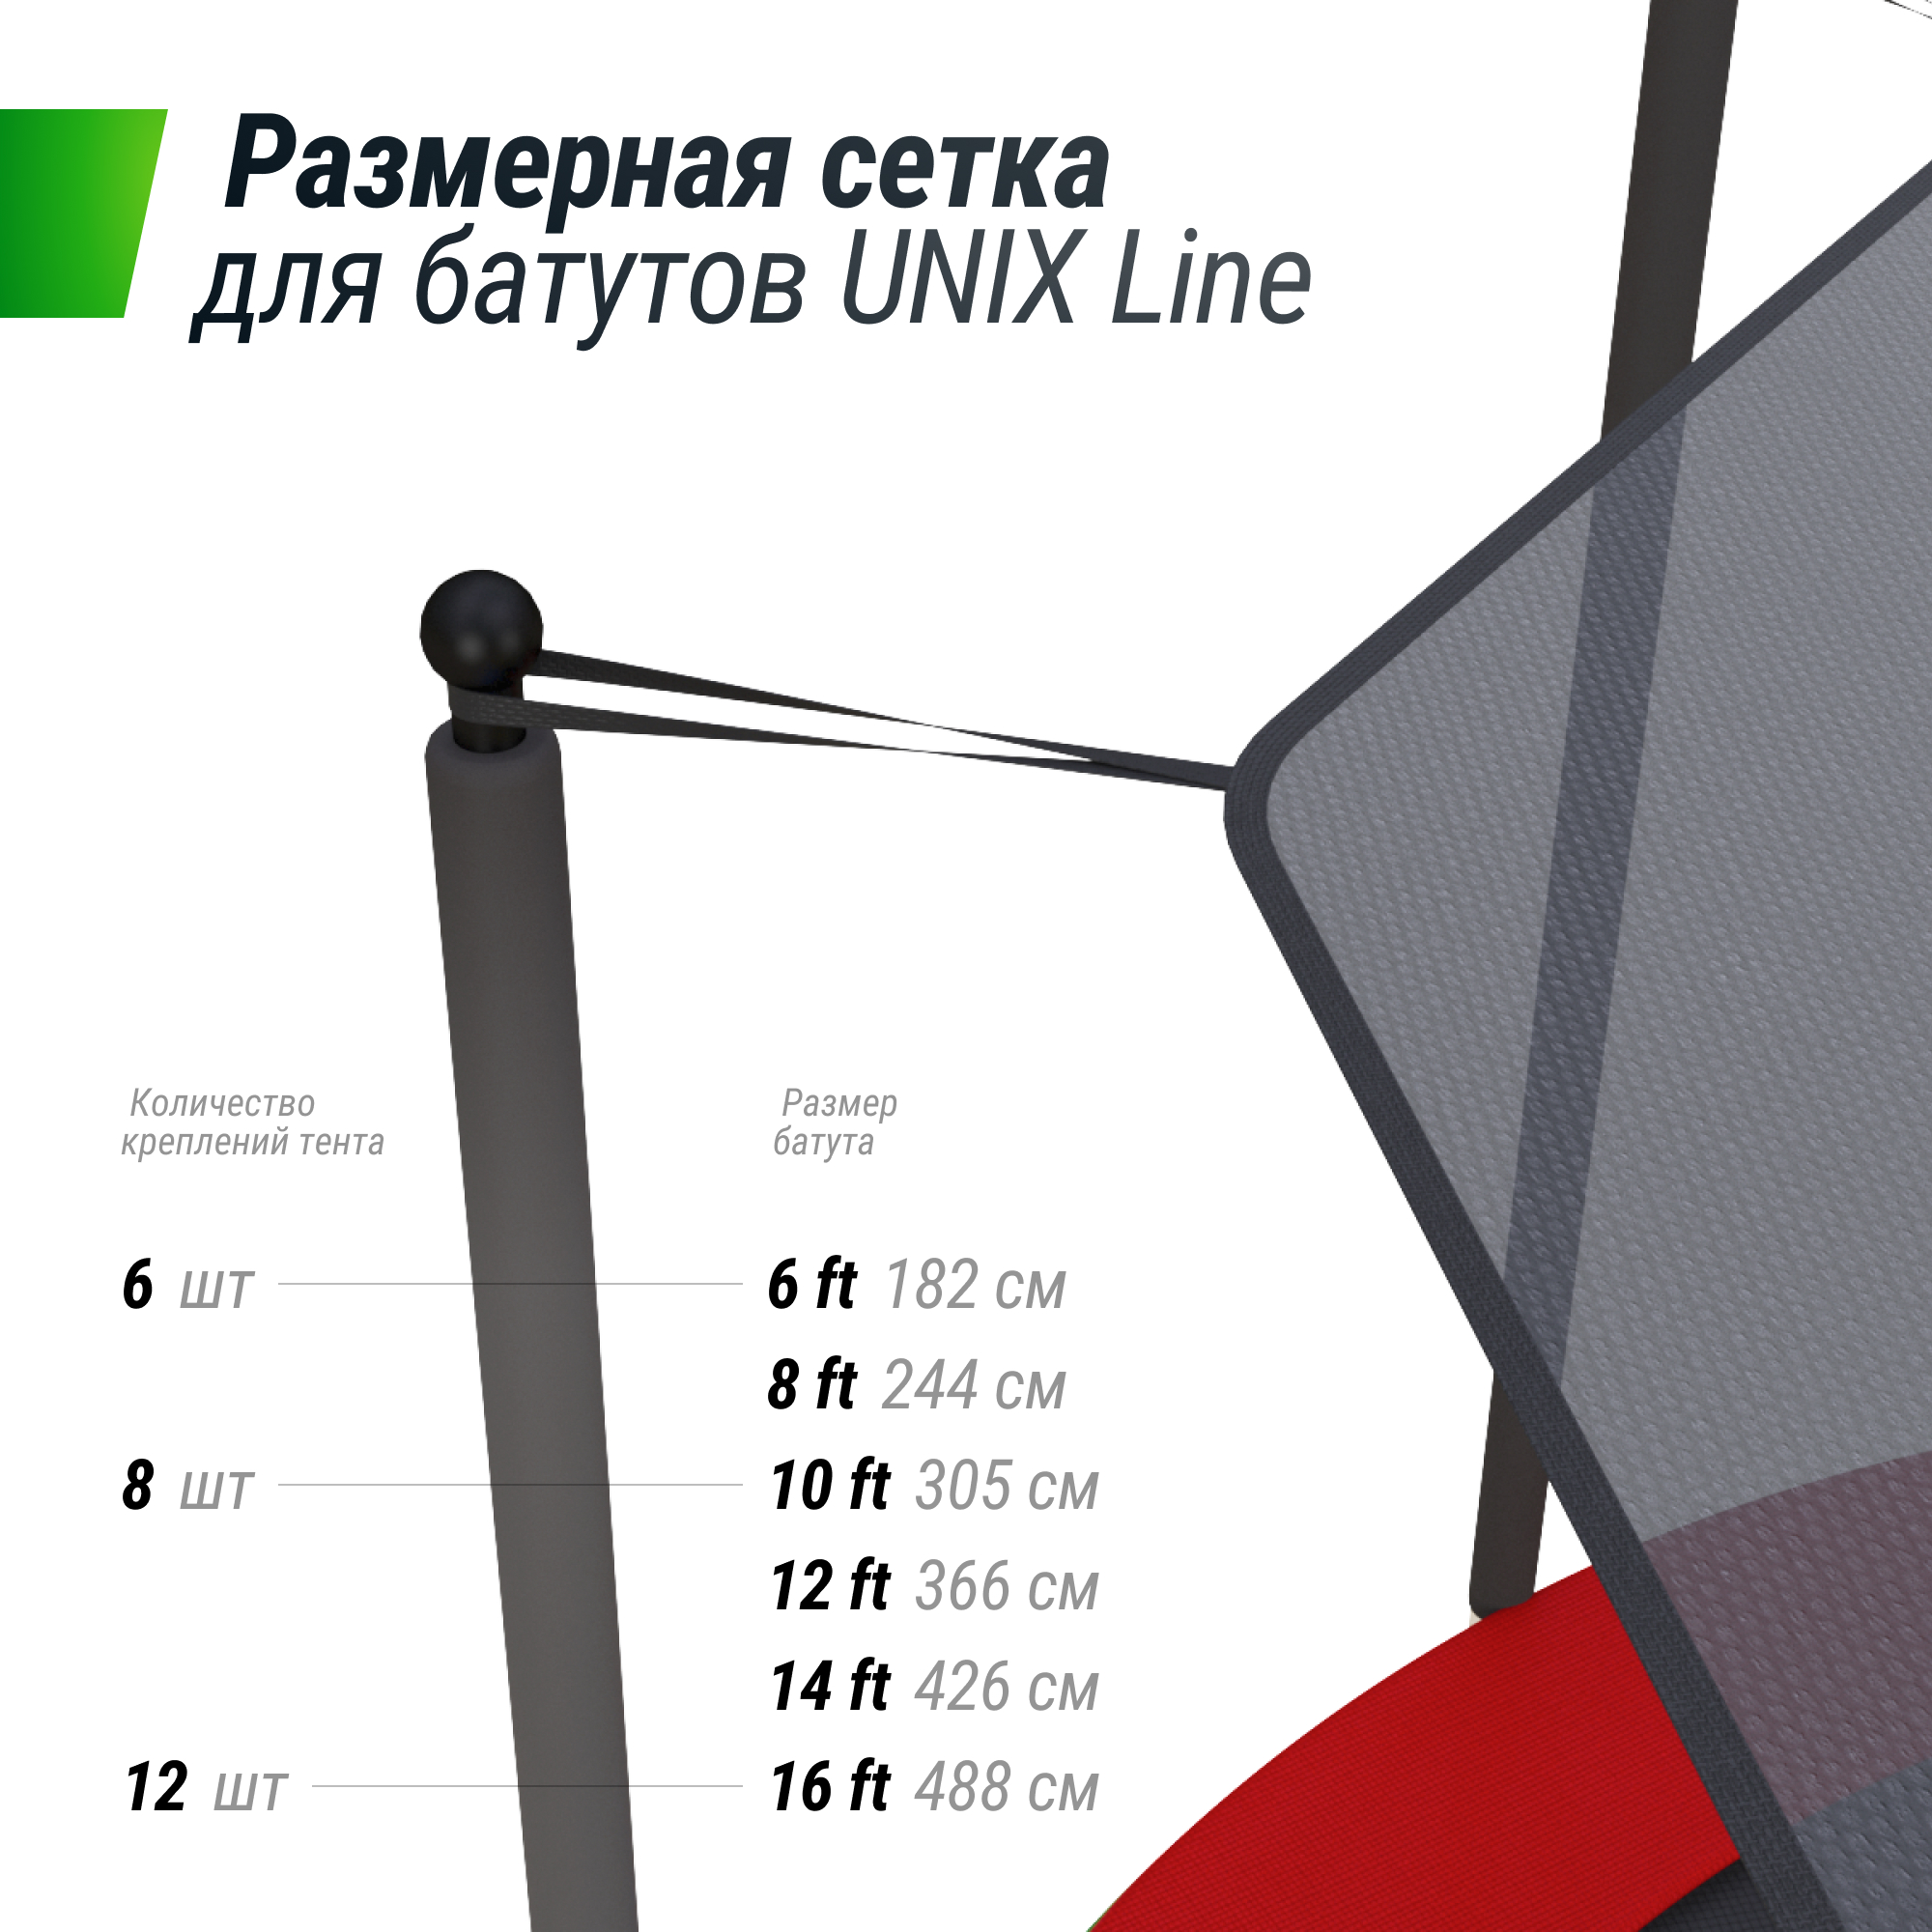 Солнцезащитный тент UNIX Line 426 см (14 ft) - 5 